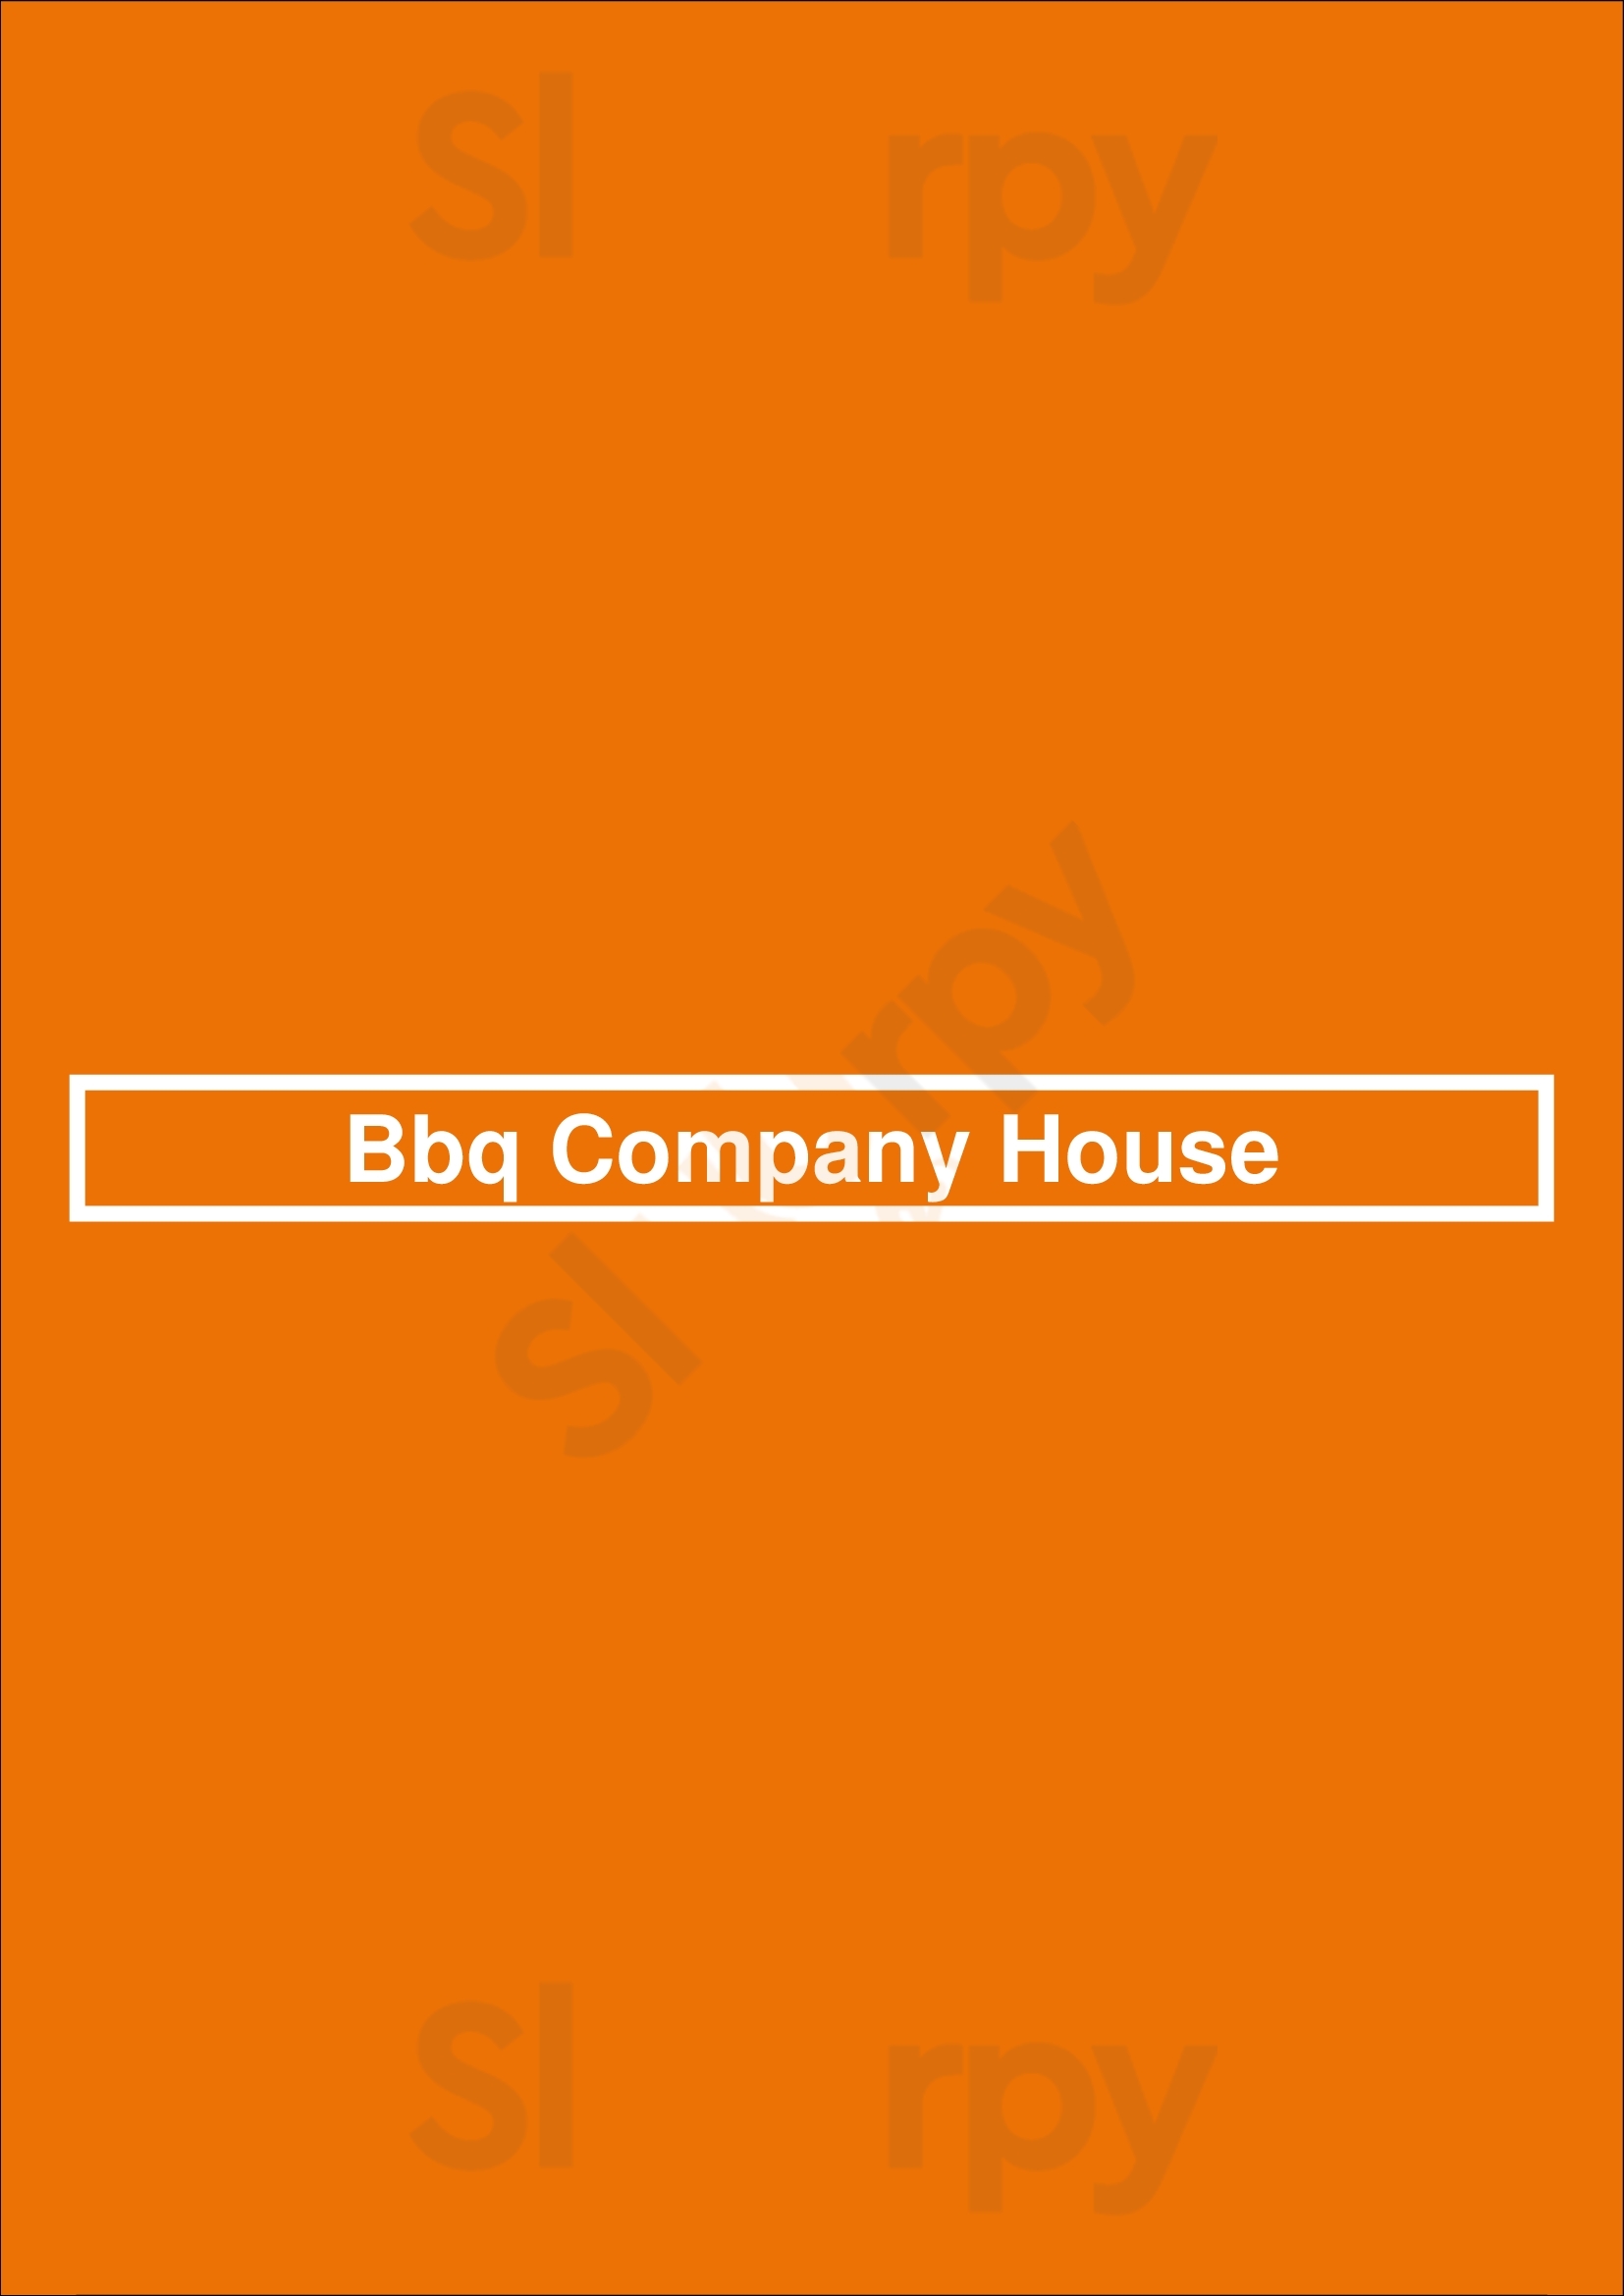 Bbq Company House São Paulo Menu - 1